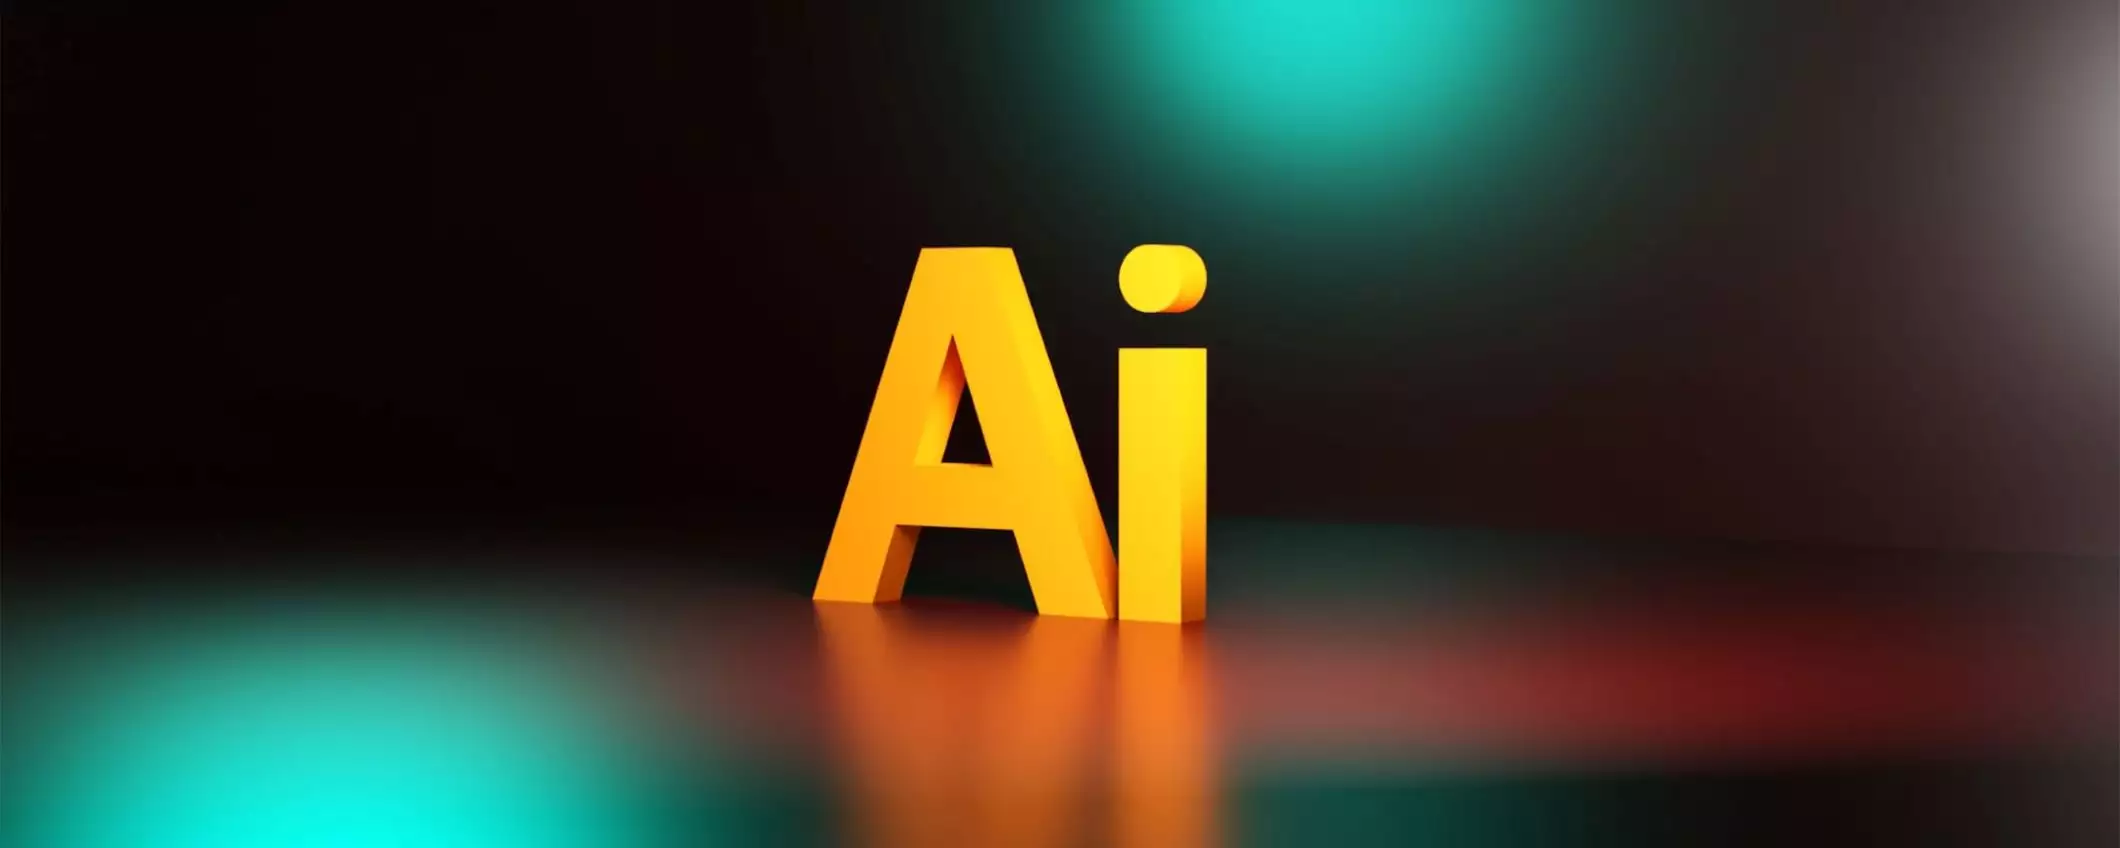 Creare un logo velocemente sfruttando l’intelligenza artificiale